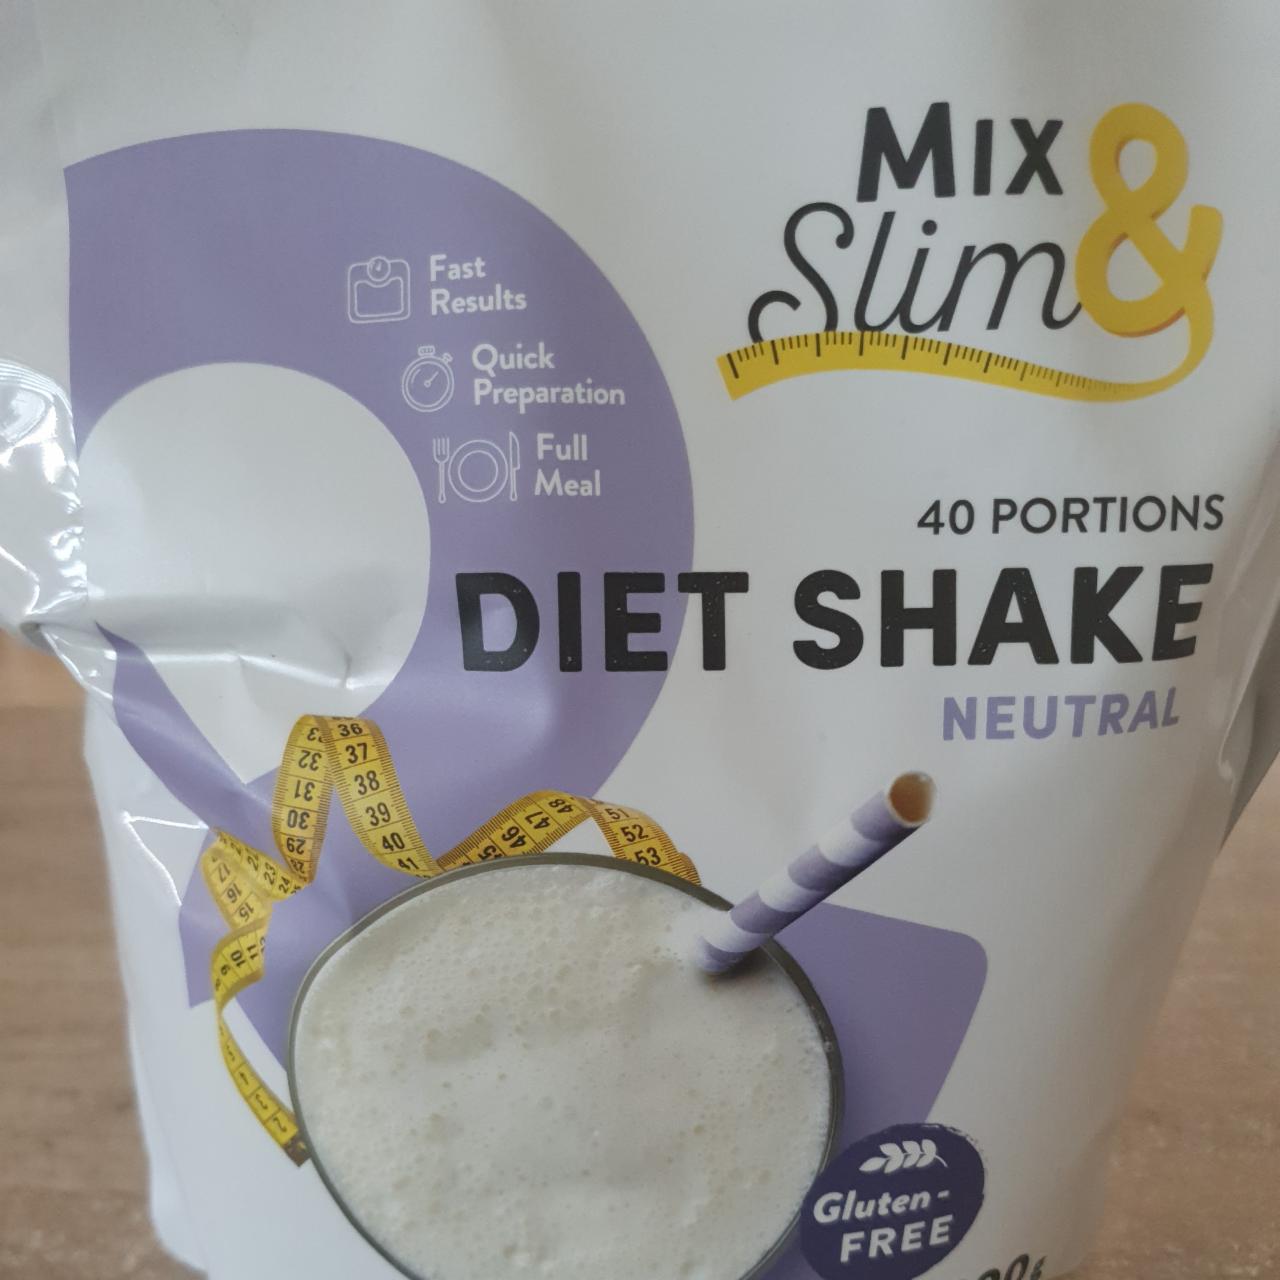 Fotografie - Diet Shake Neutral Mix & Slim